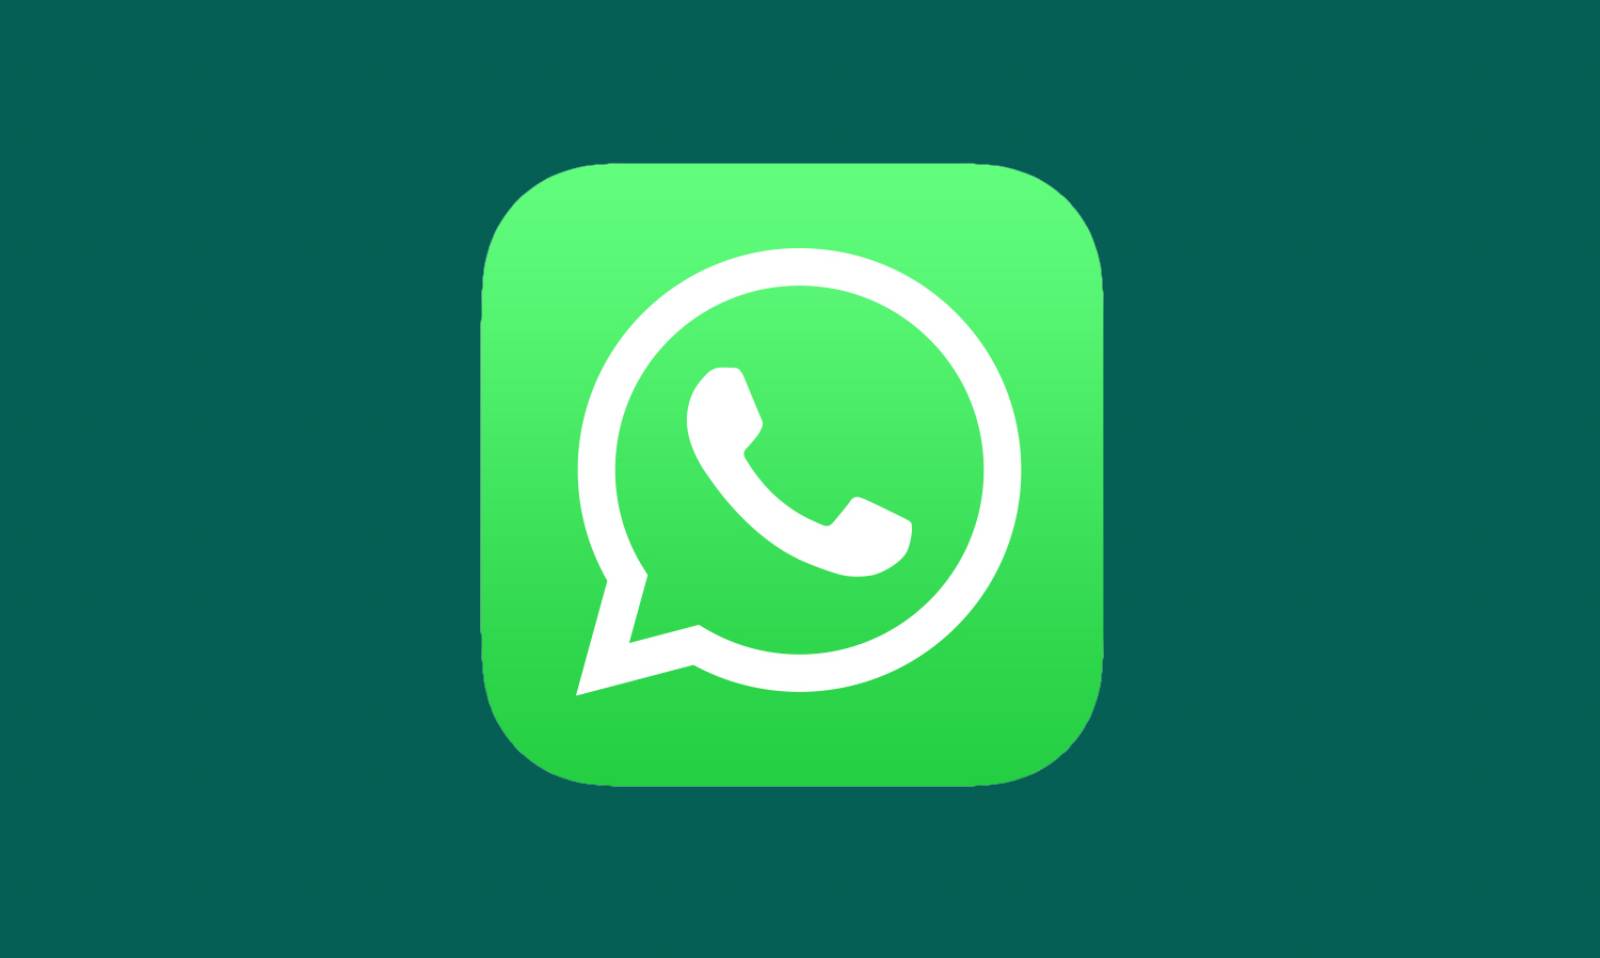 WhatsApp-Akkuverbrauch